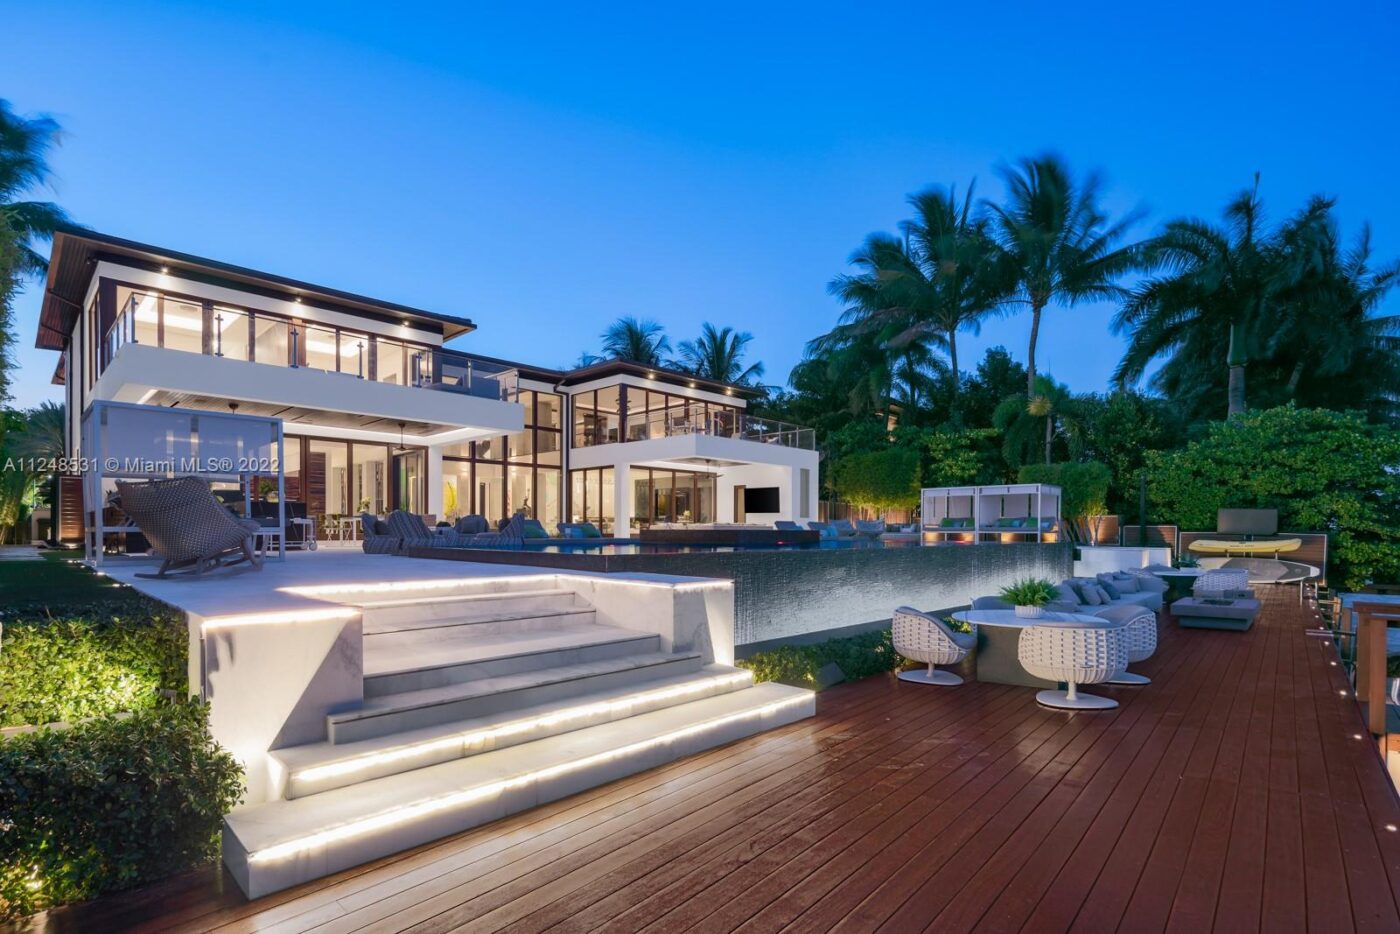 El Bay Point Casa Bahia de $55 millones en Miami, perfecto para superdeportivos exclusivos